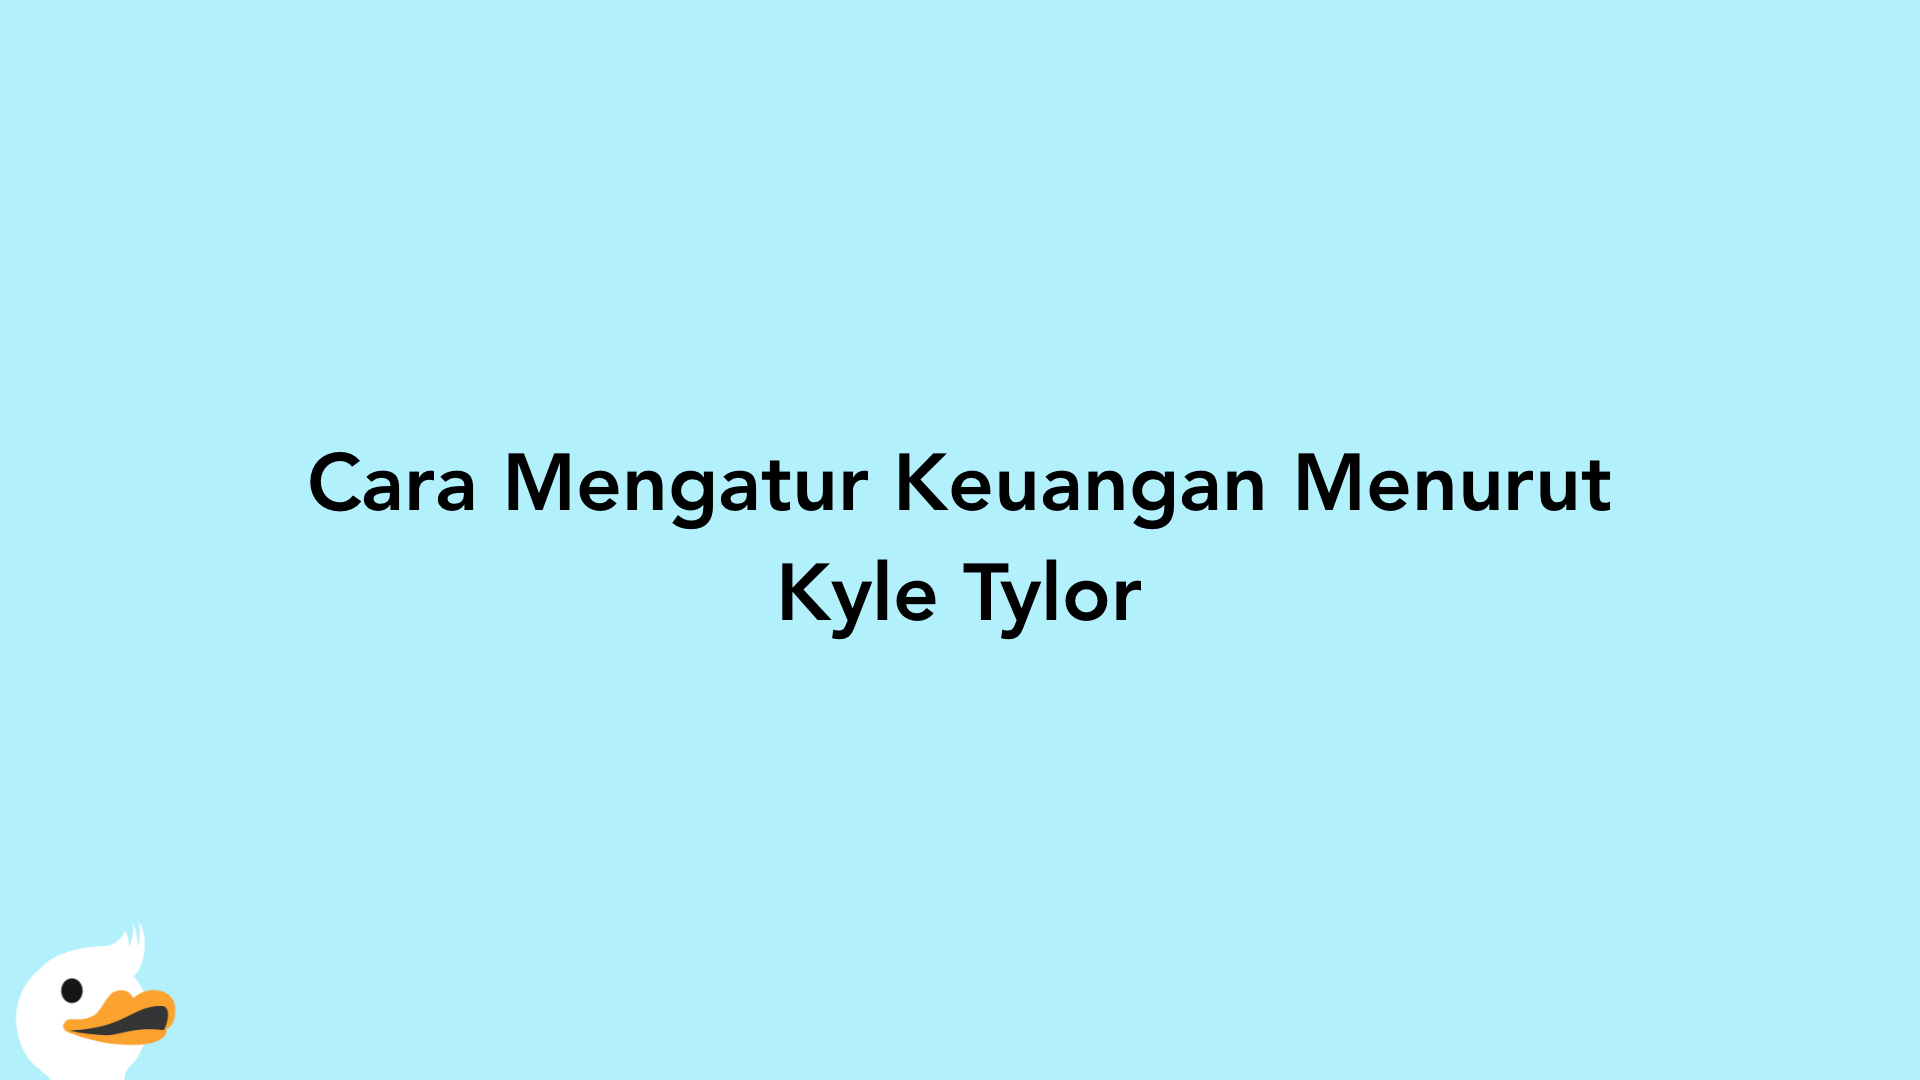 Cara Mengatur Keuangan Menurut Kyle Tylor